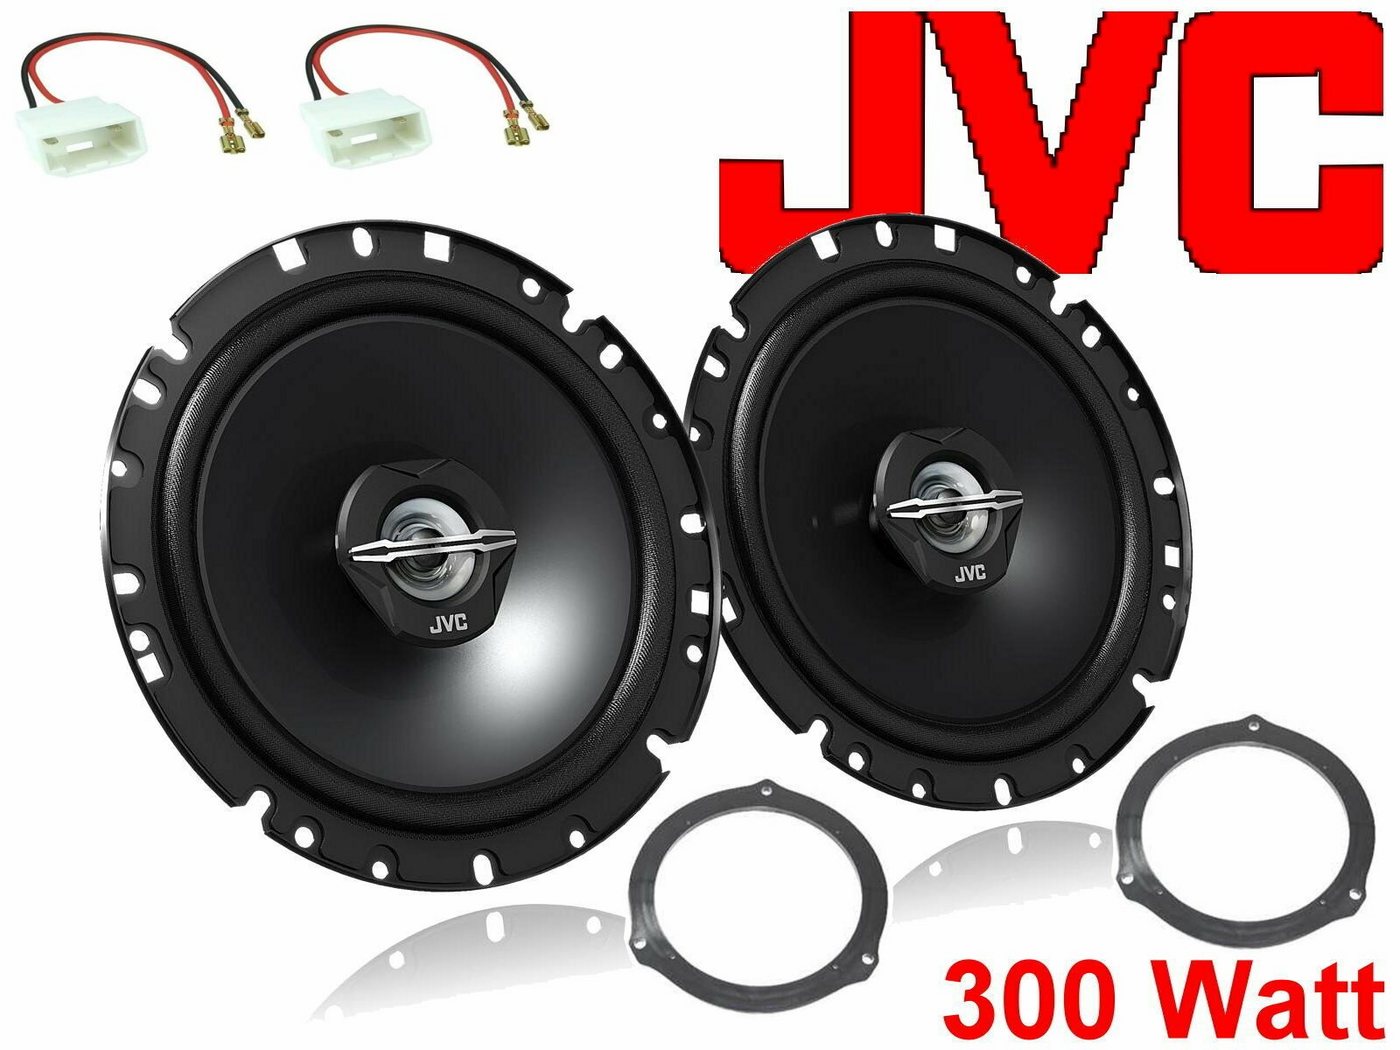 DSX JVC passend für Ford S-Max Bj 05/06 - 2021 Lautspr Auto-Lautsprecher (30 W) von DSX